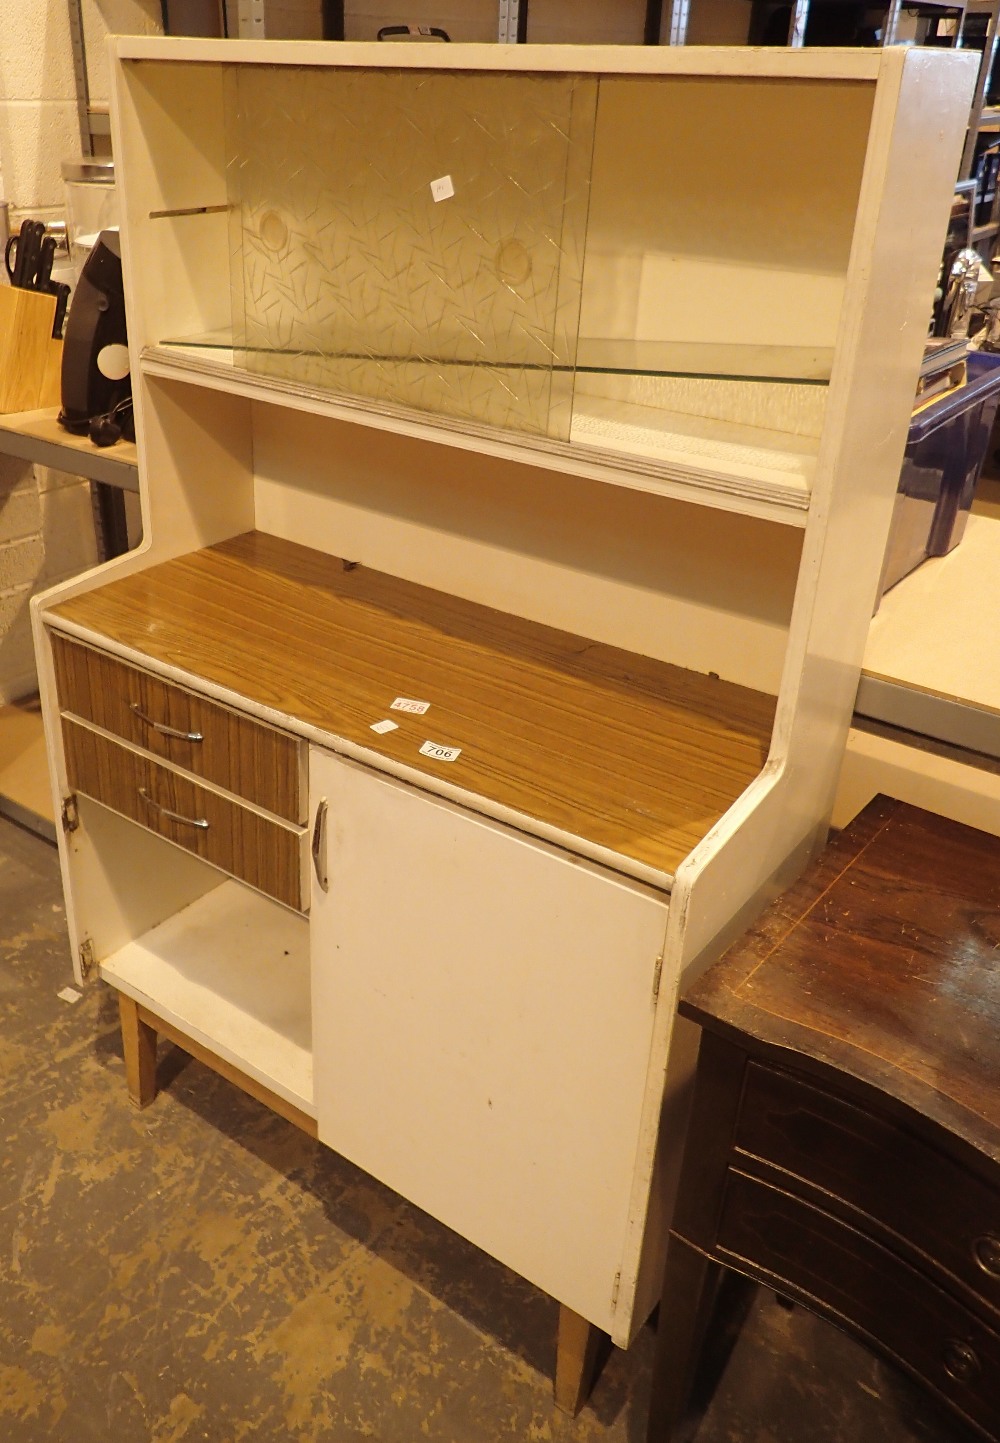 1960s kitchen cabinet